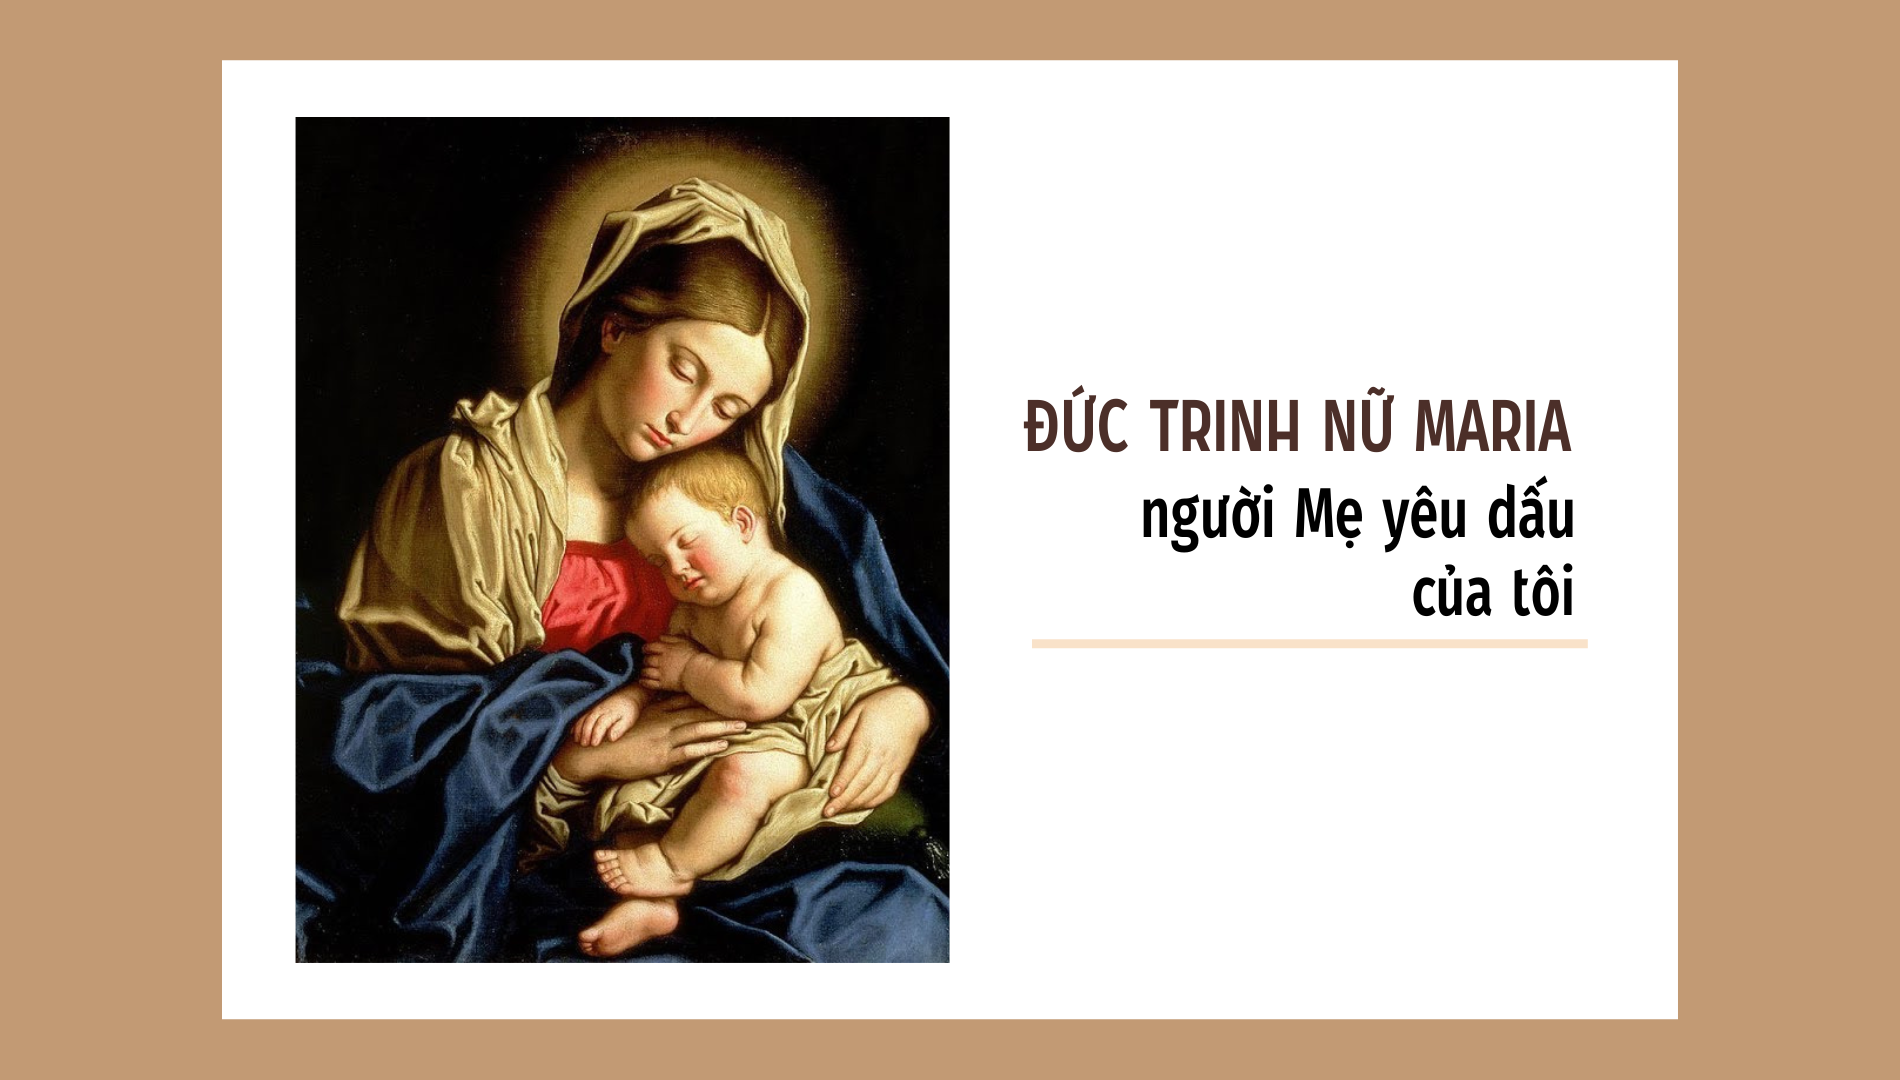 Đức Trinh Nữ Maria - người mẹ yêu dấu của tôi